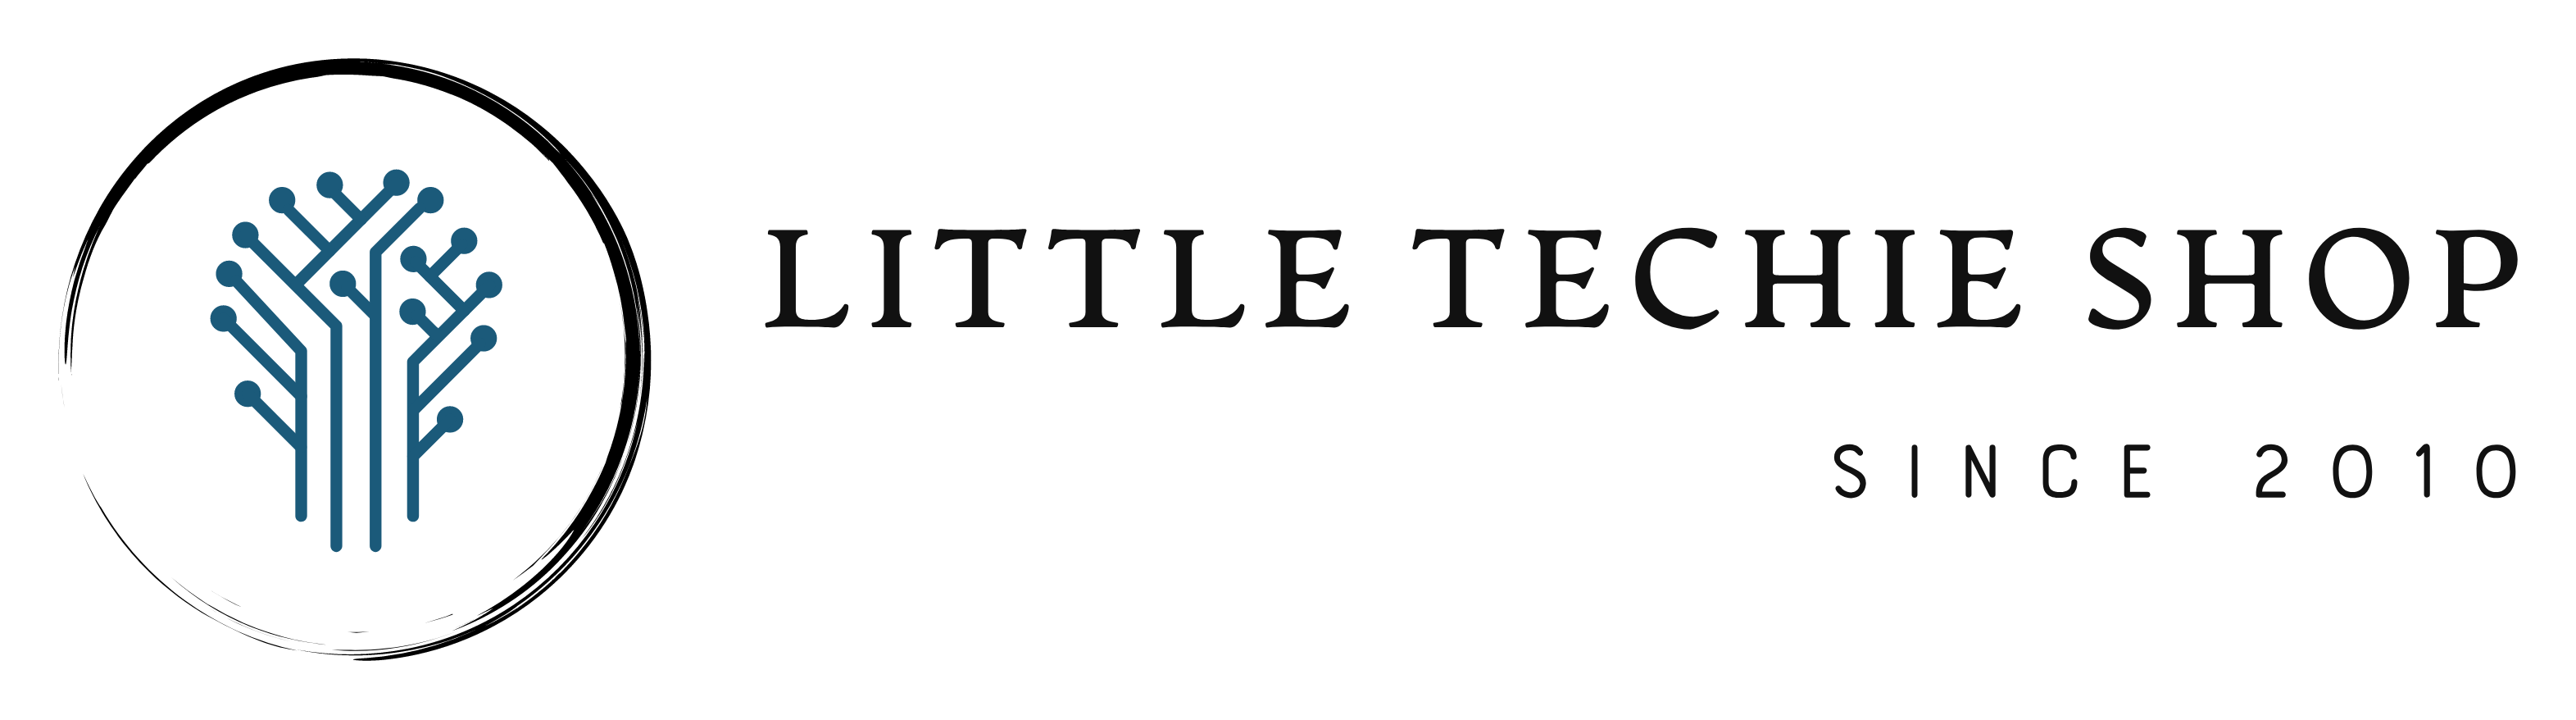 Little Techie Shop Ltd